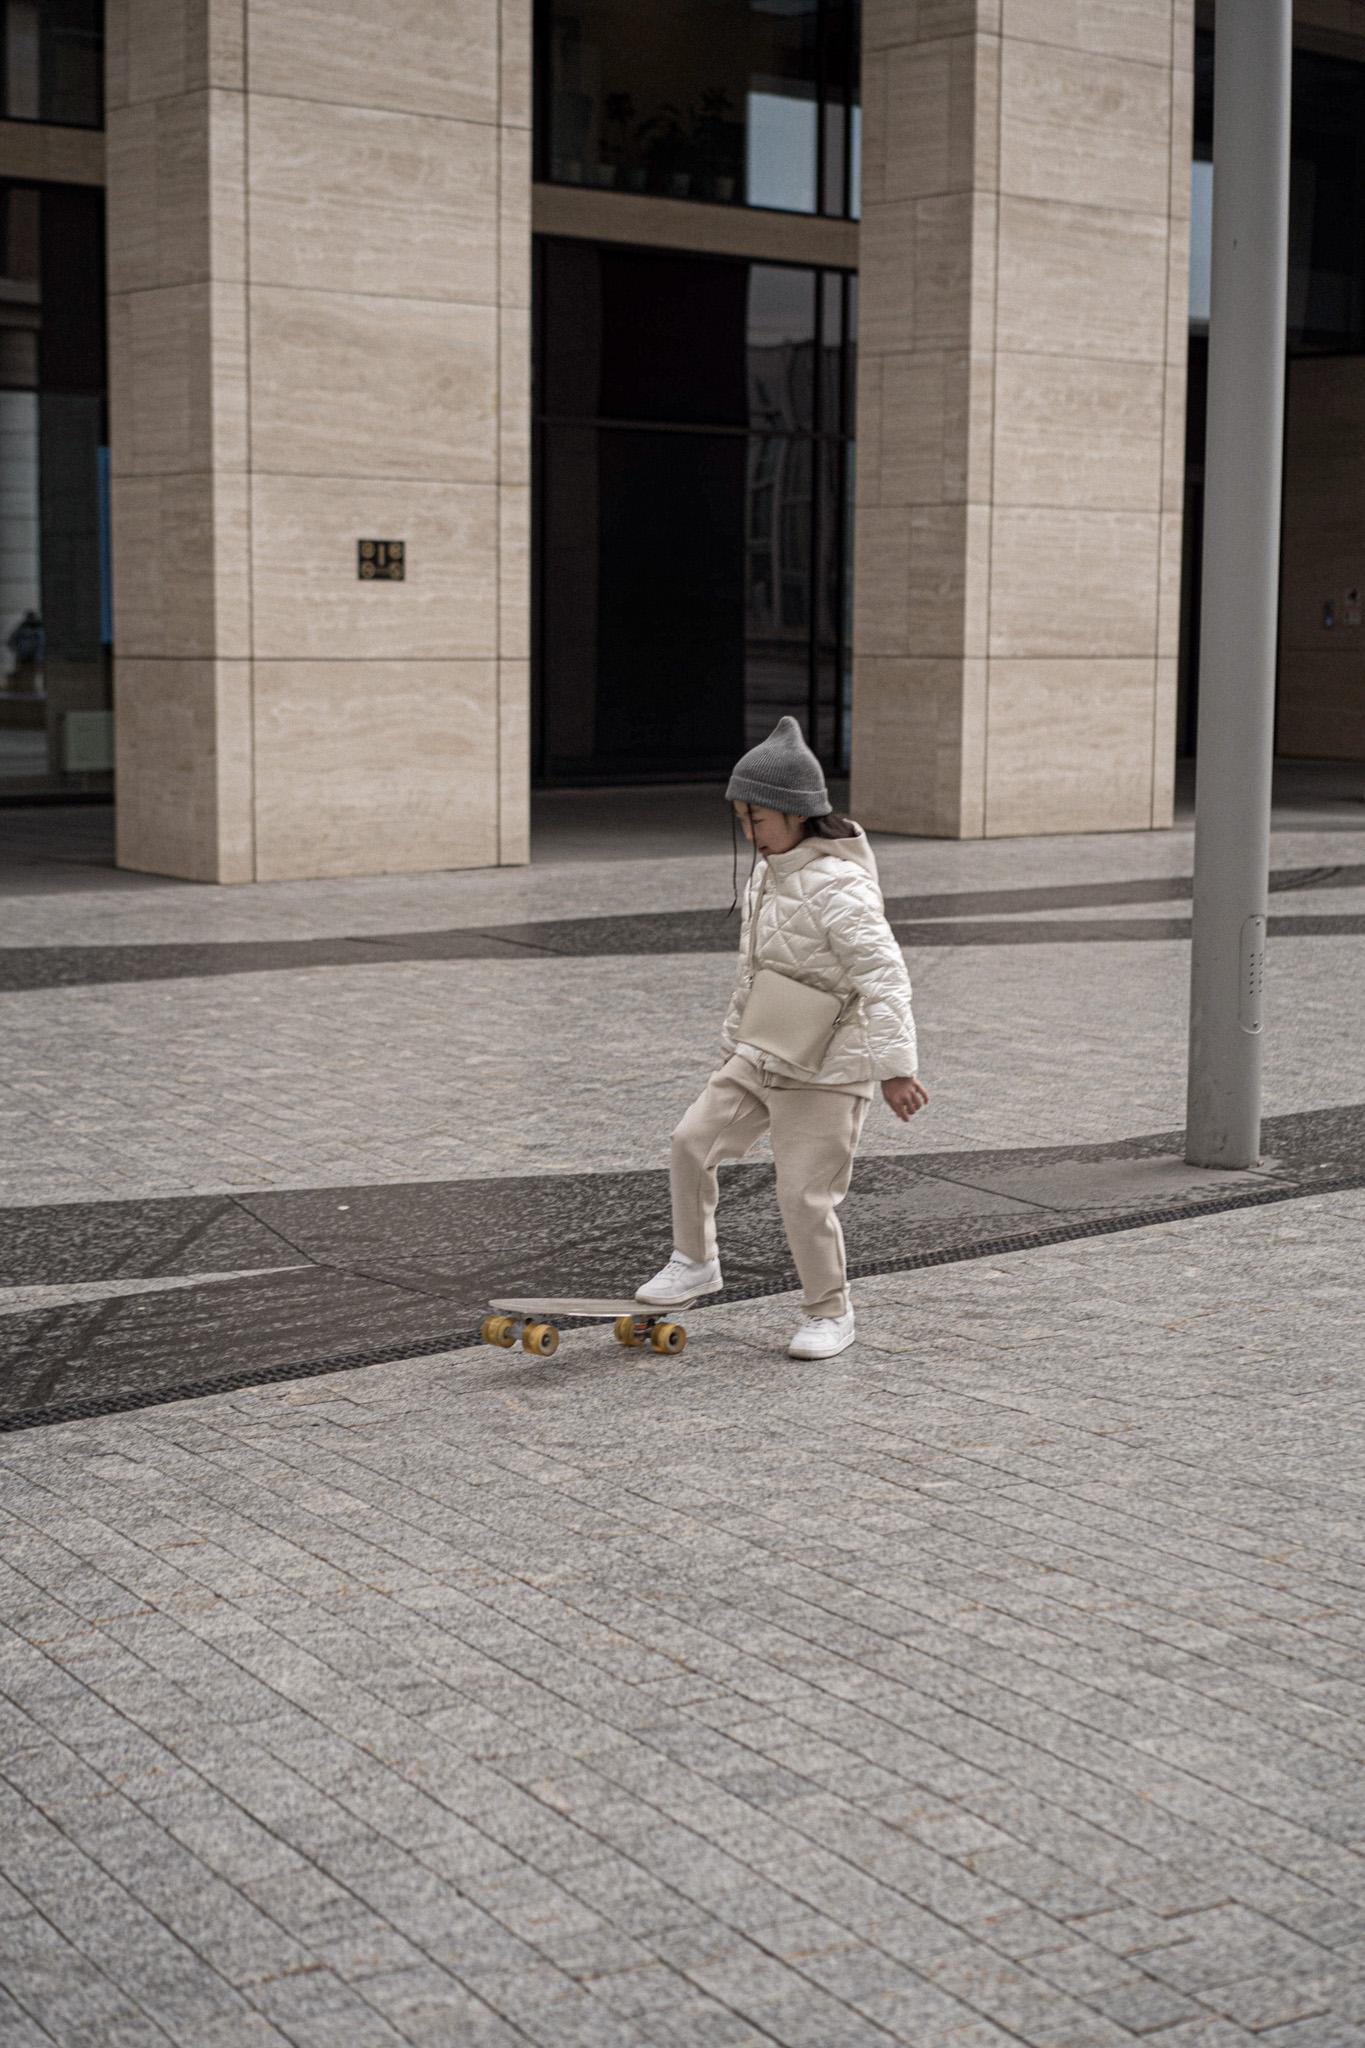 barn skateboard